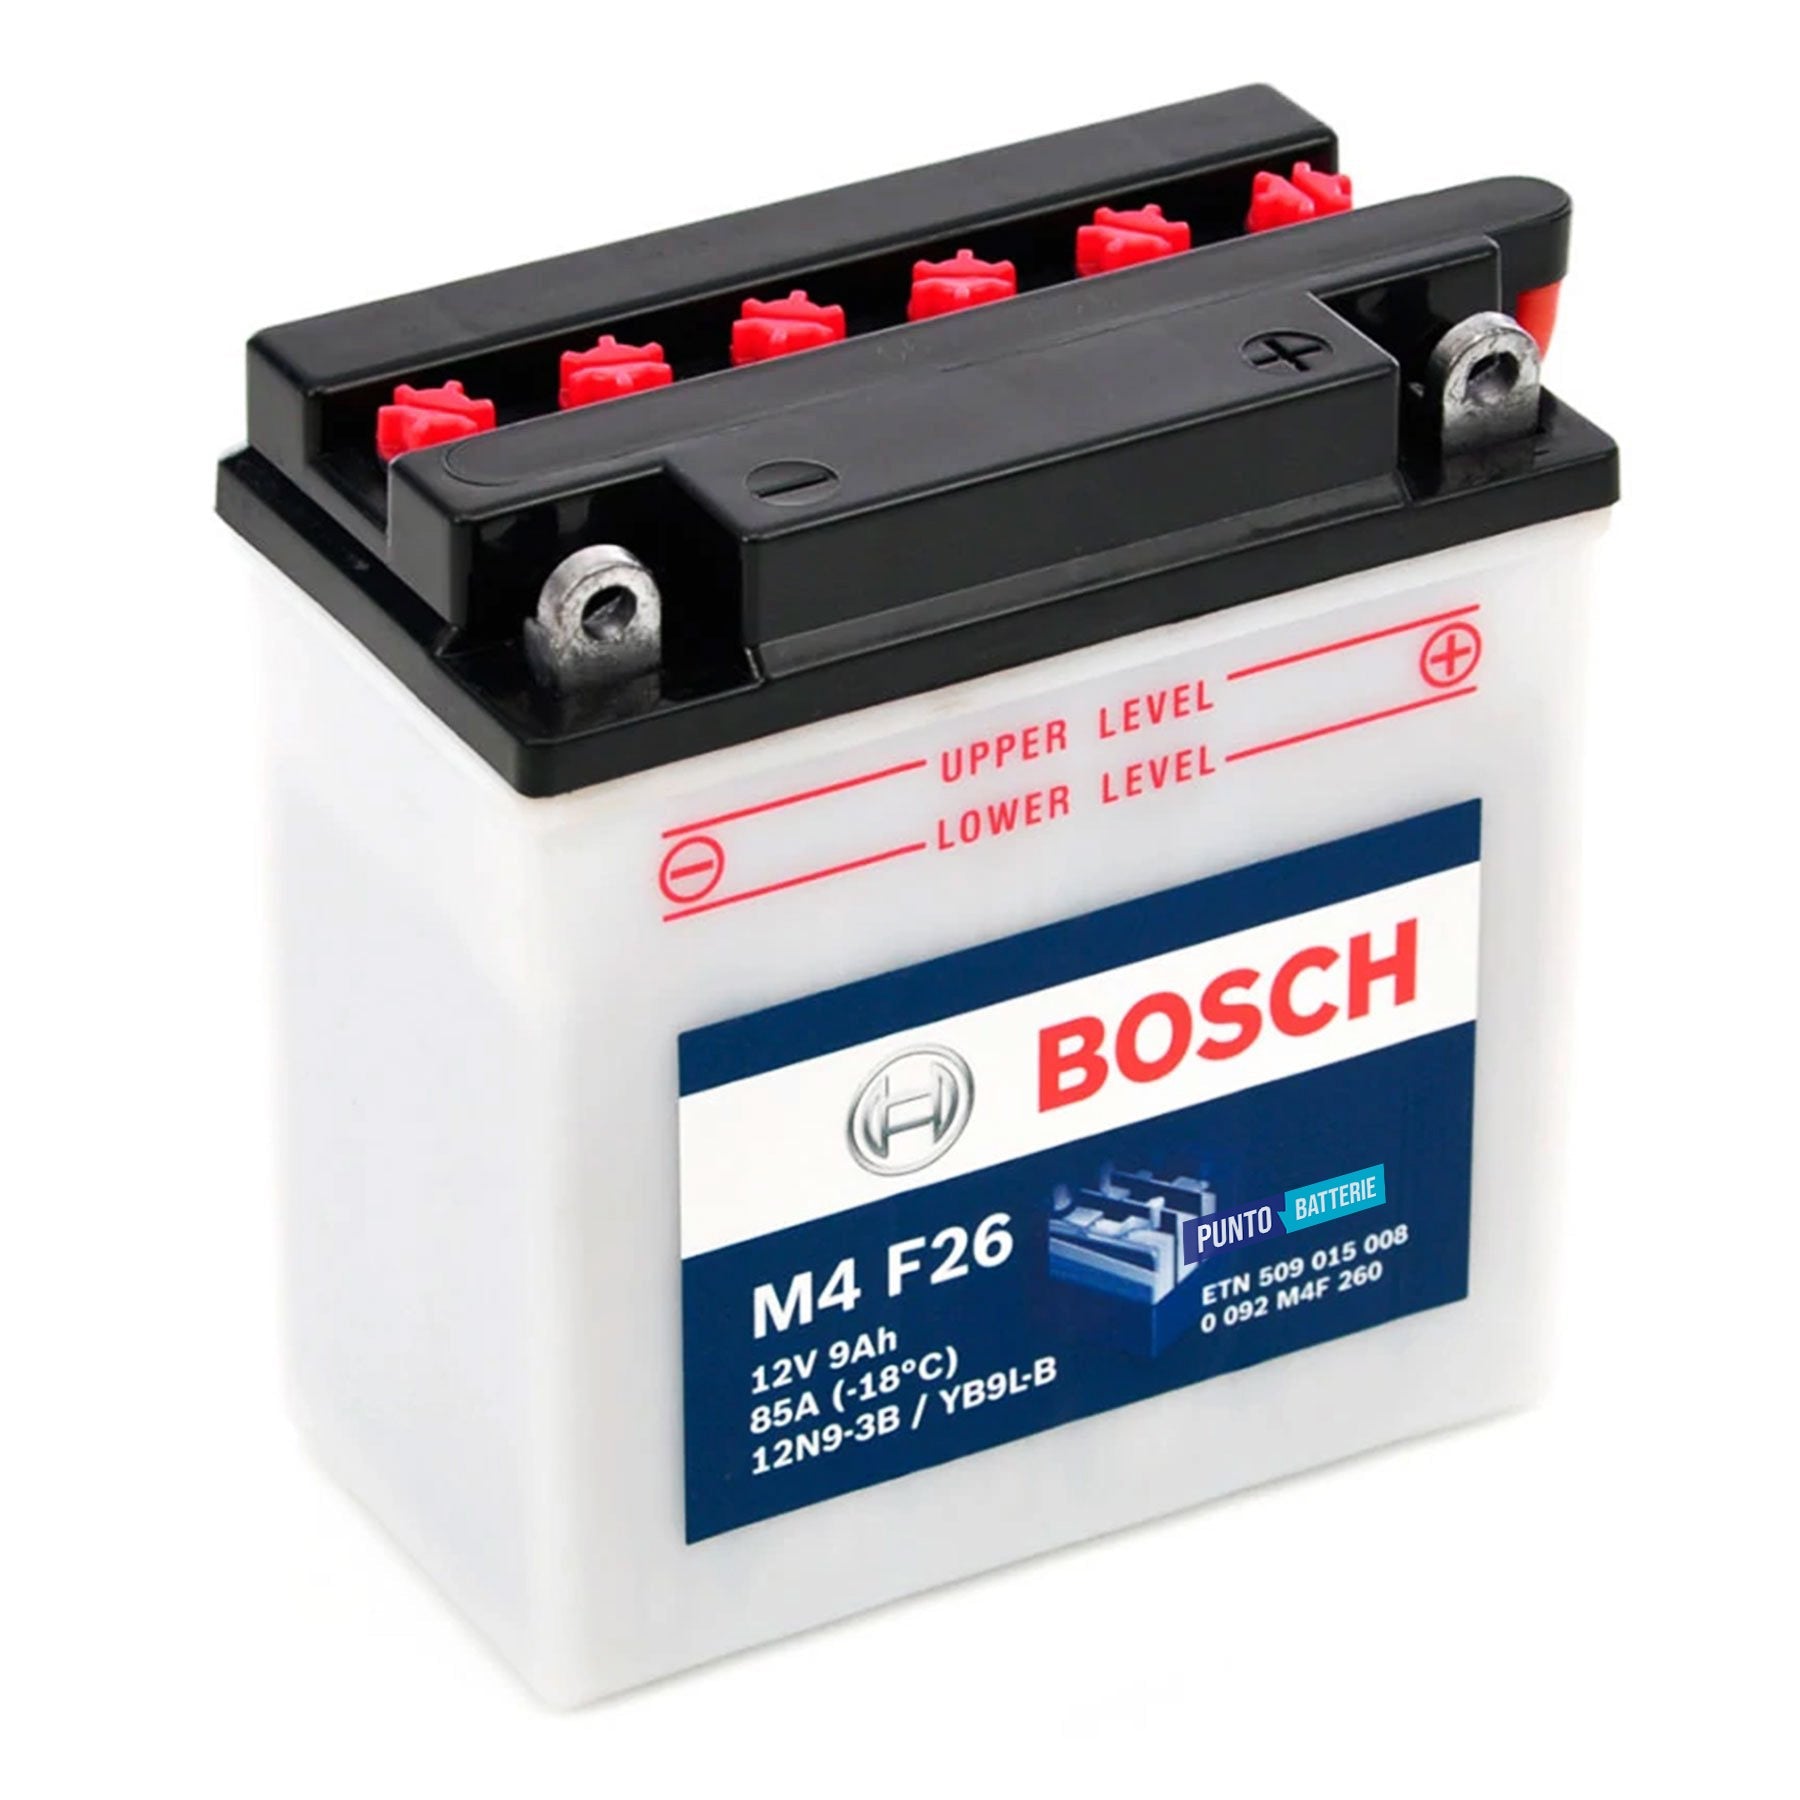 Batteria originale Bosch M4 M4F26, dimensioni 99 x 57 x 111, polo positivo a destra, 12 volt, 9 amperora, 85 ampere. Batteria per moto, scooter e powersport.